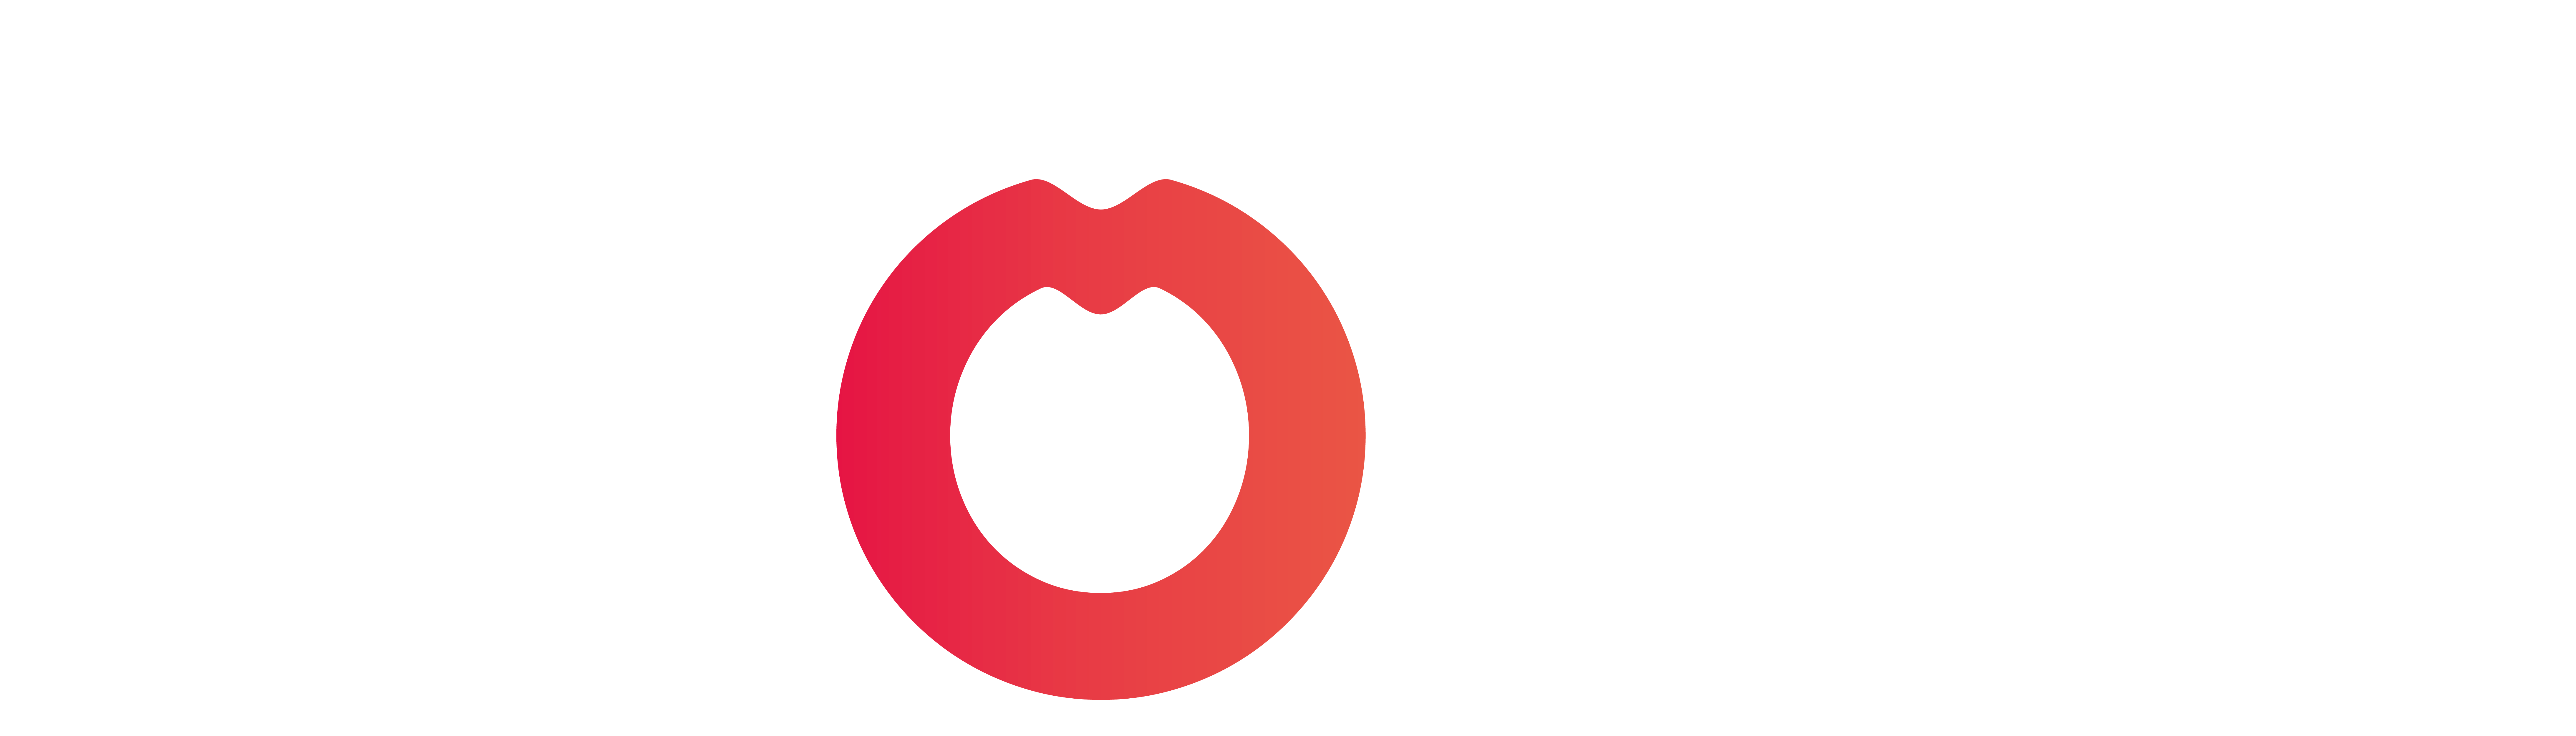 Logo Movinpark